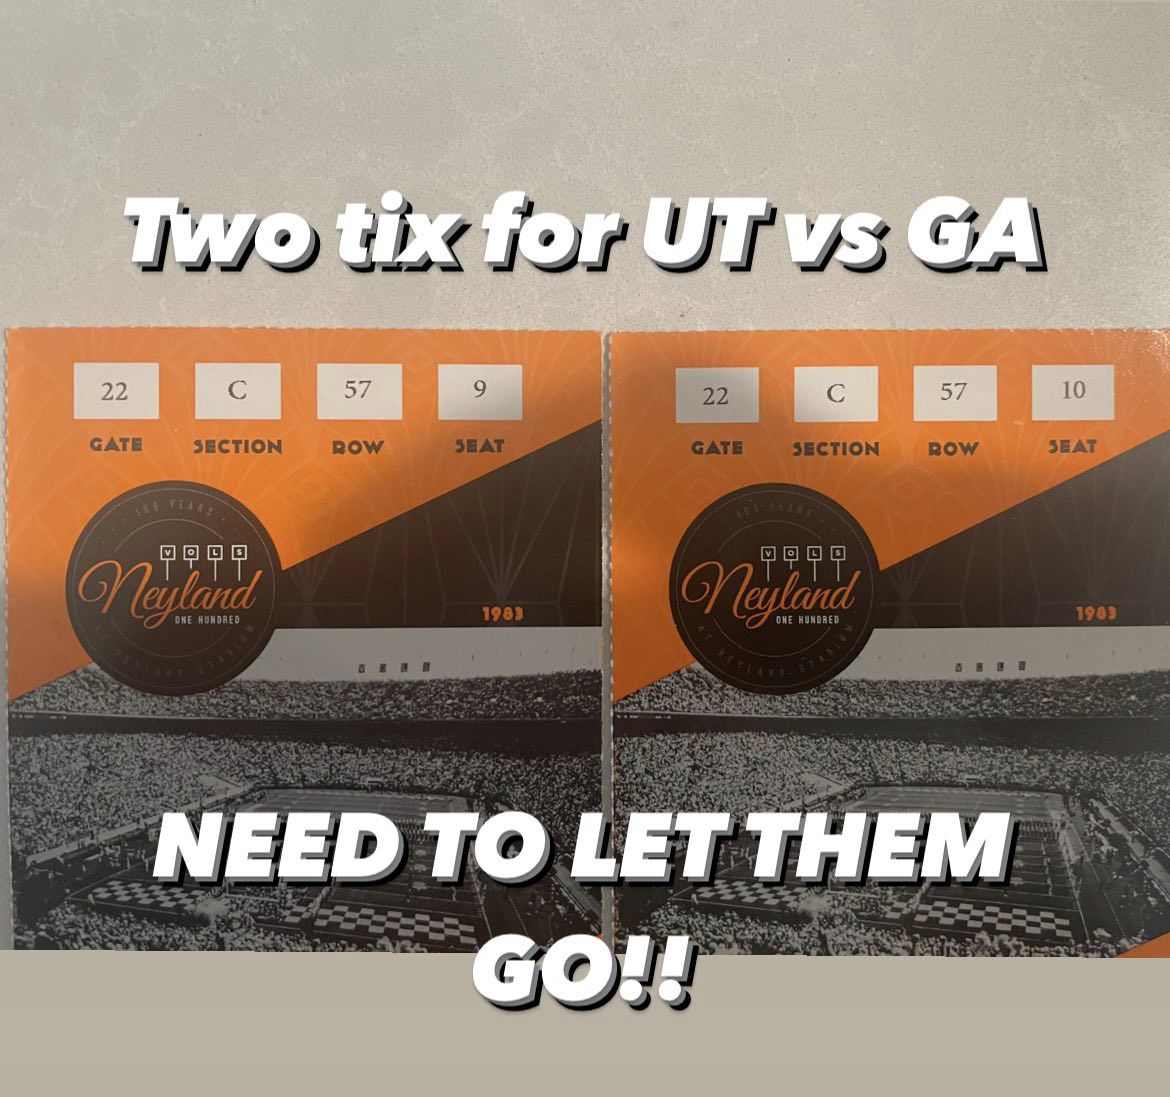 UT vs GA (Tennessee Vs Georgia) Nov 13th - Two Tickets 